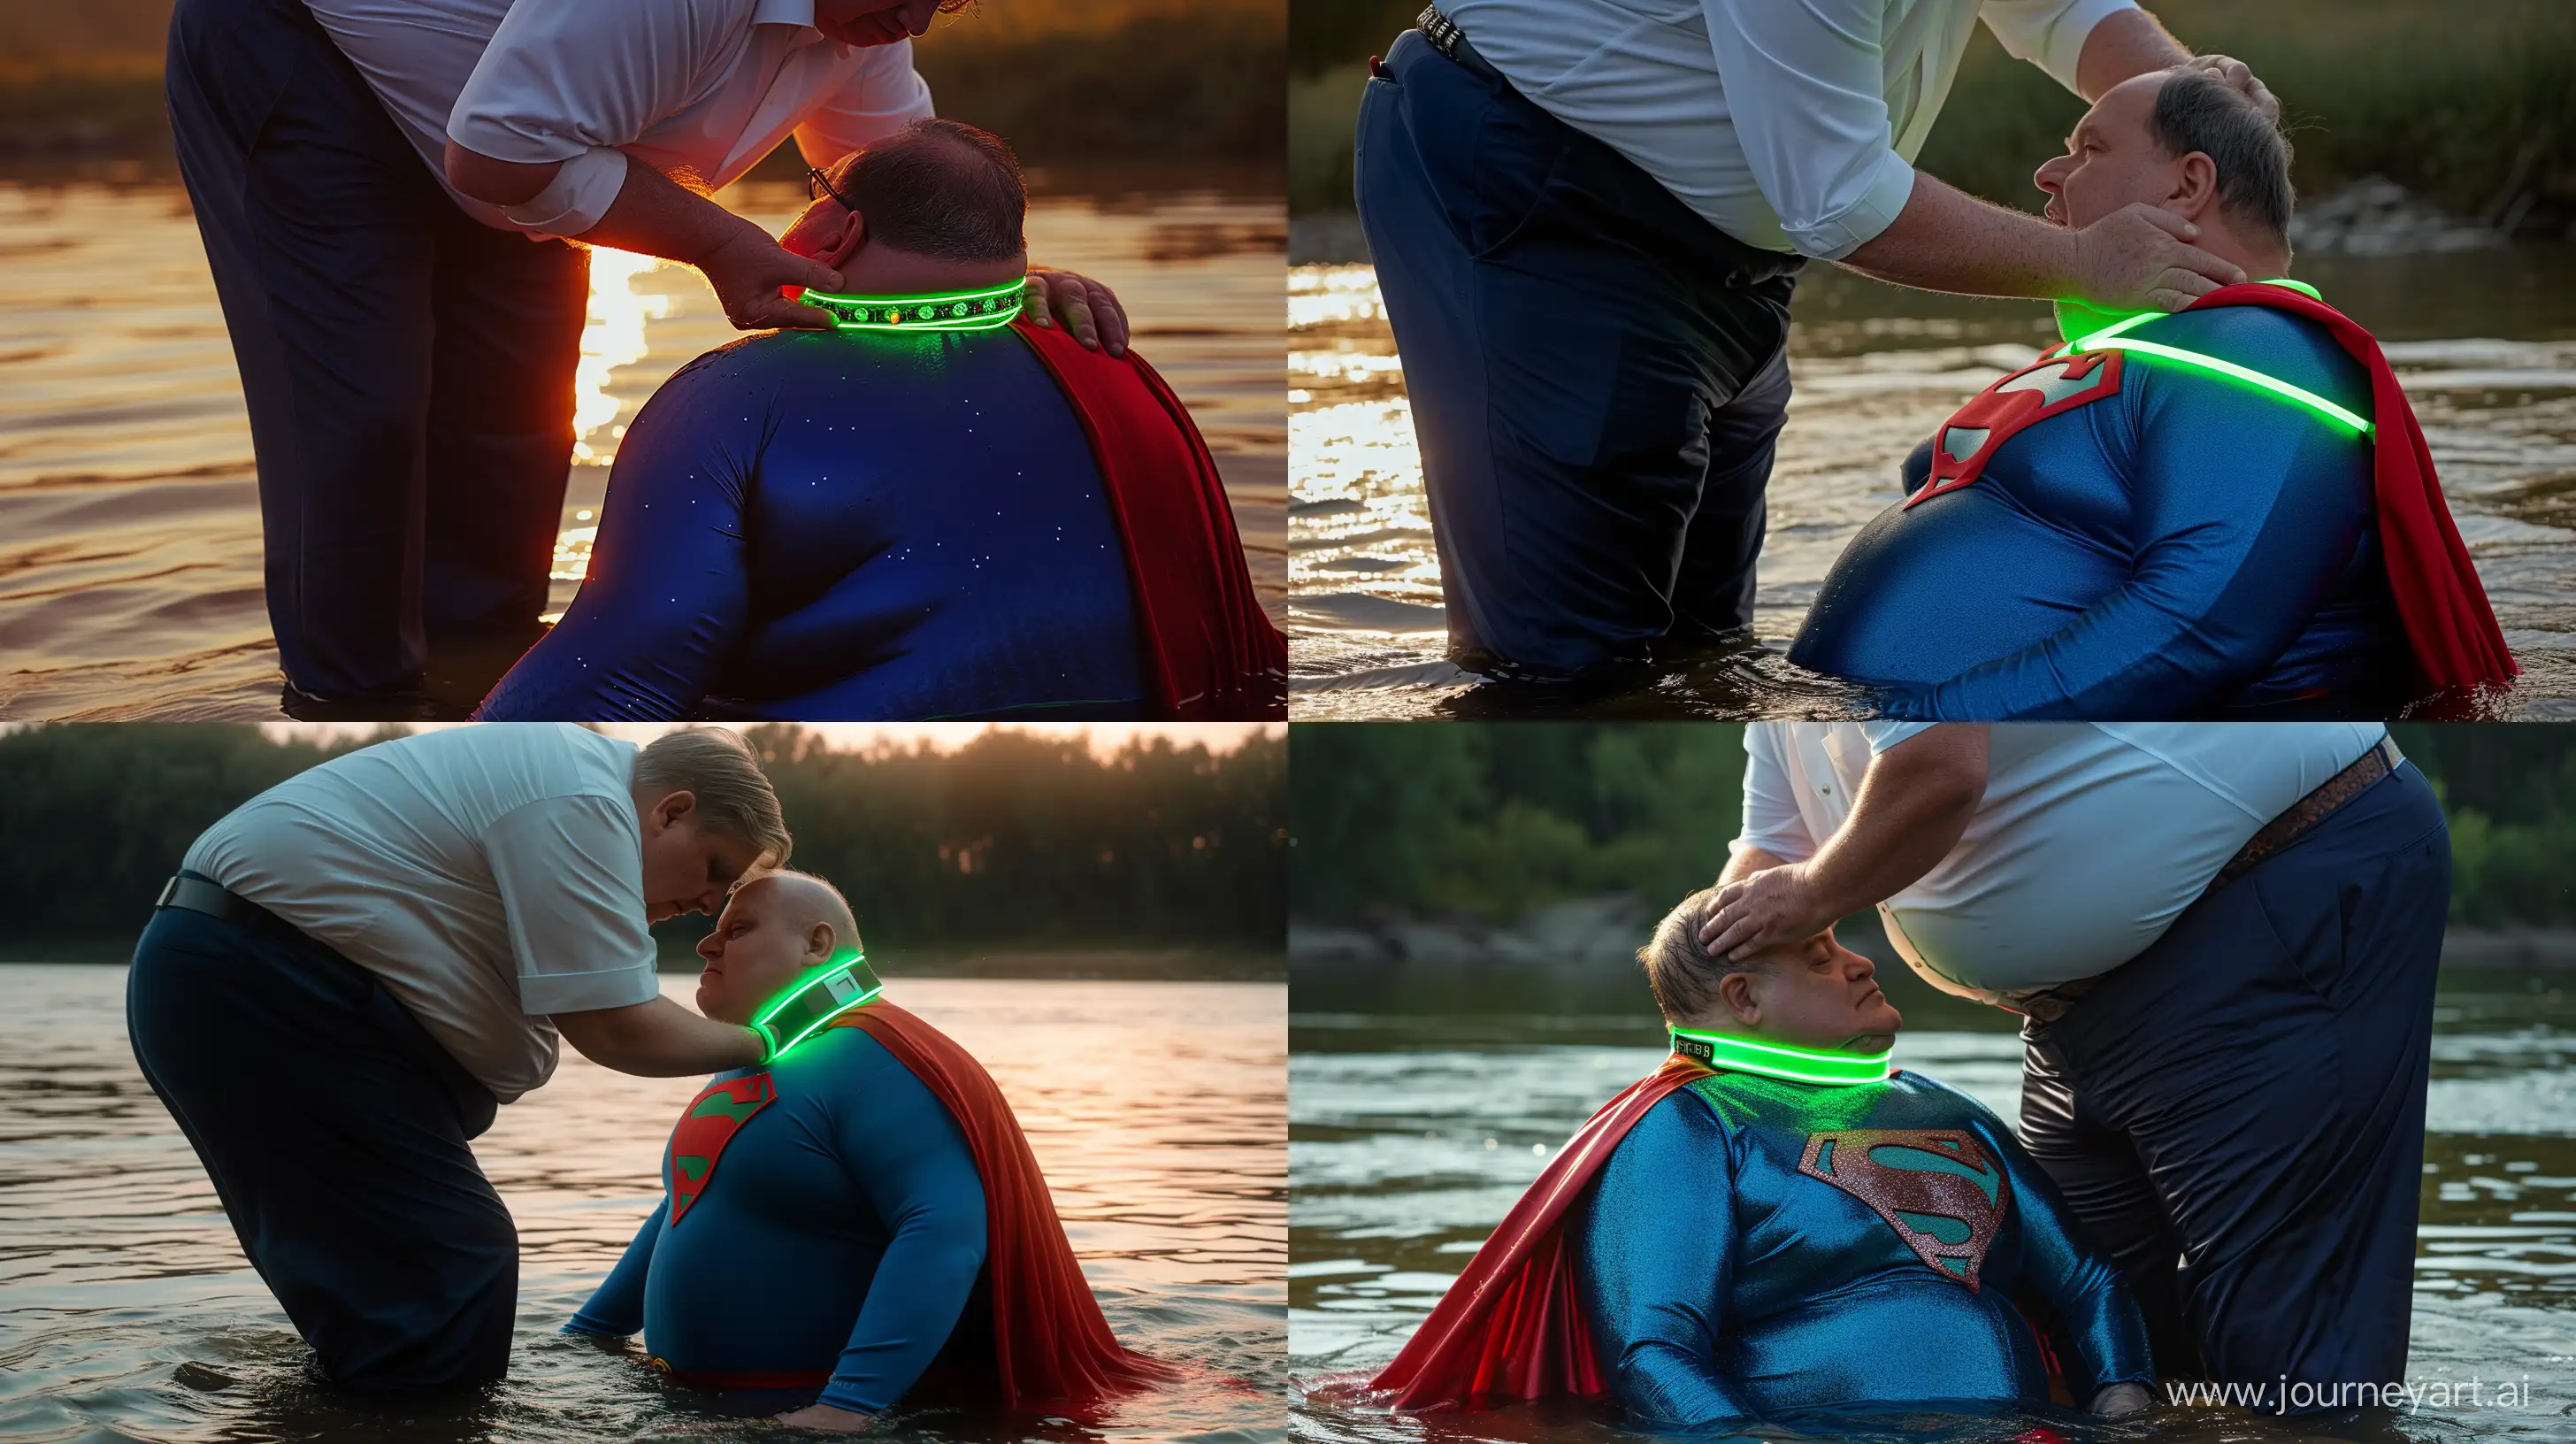 Eccentric-River-Scene-Aging-Superman-in-Neon-Collar